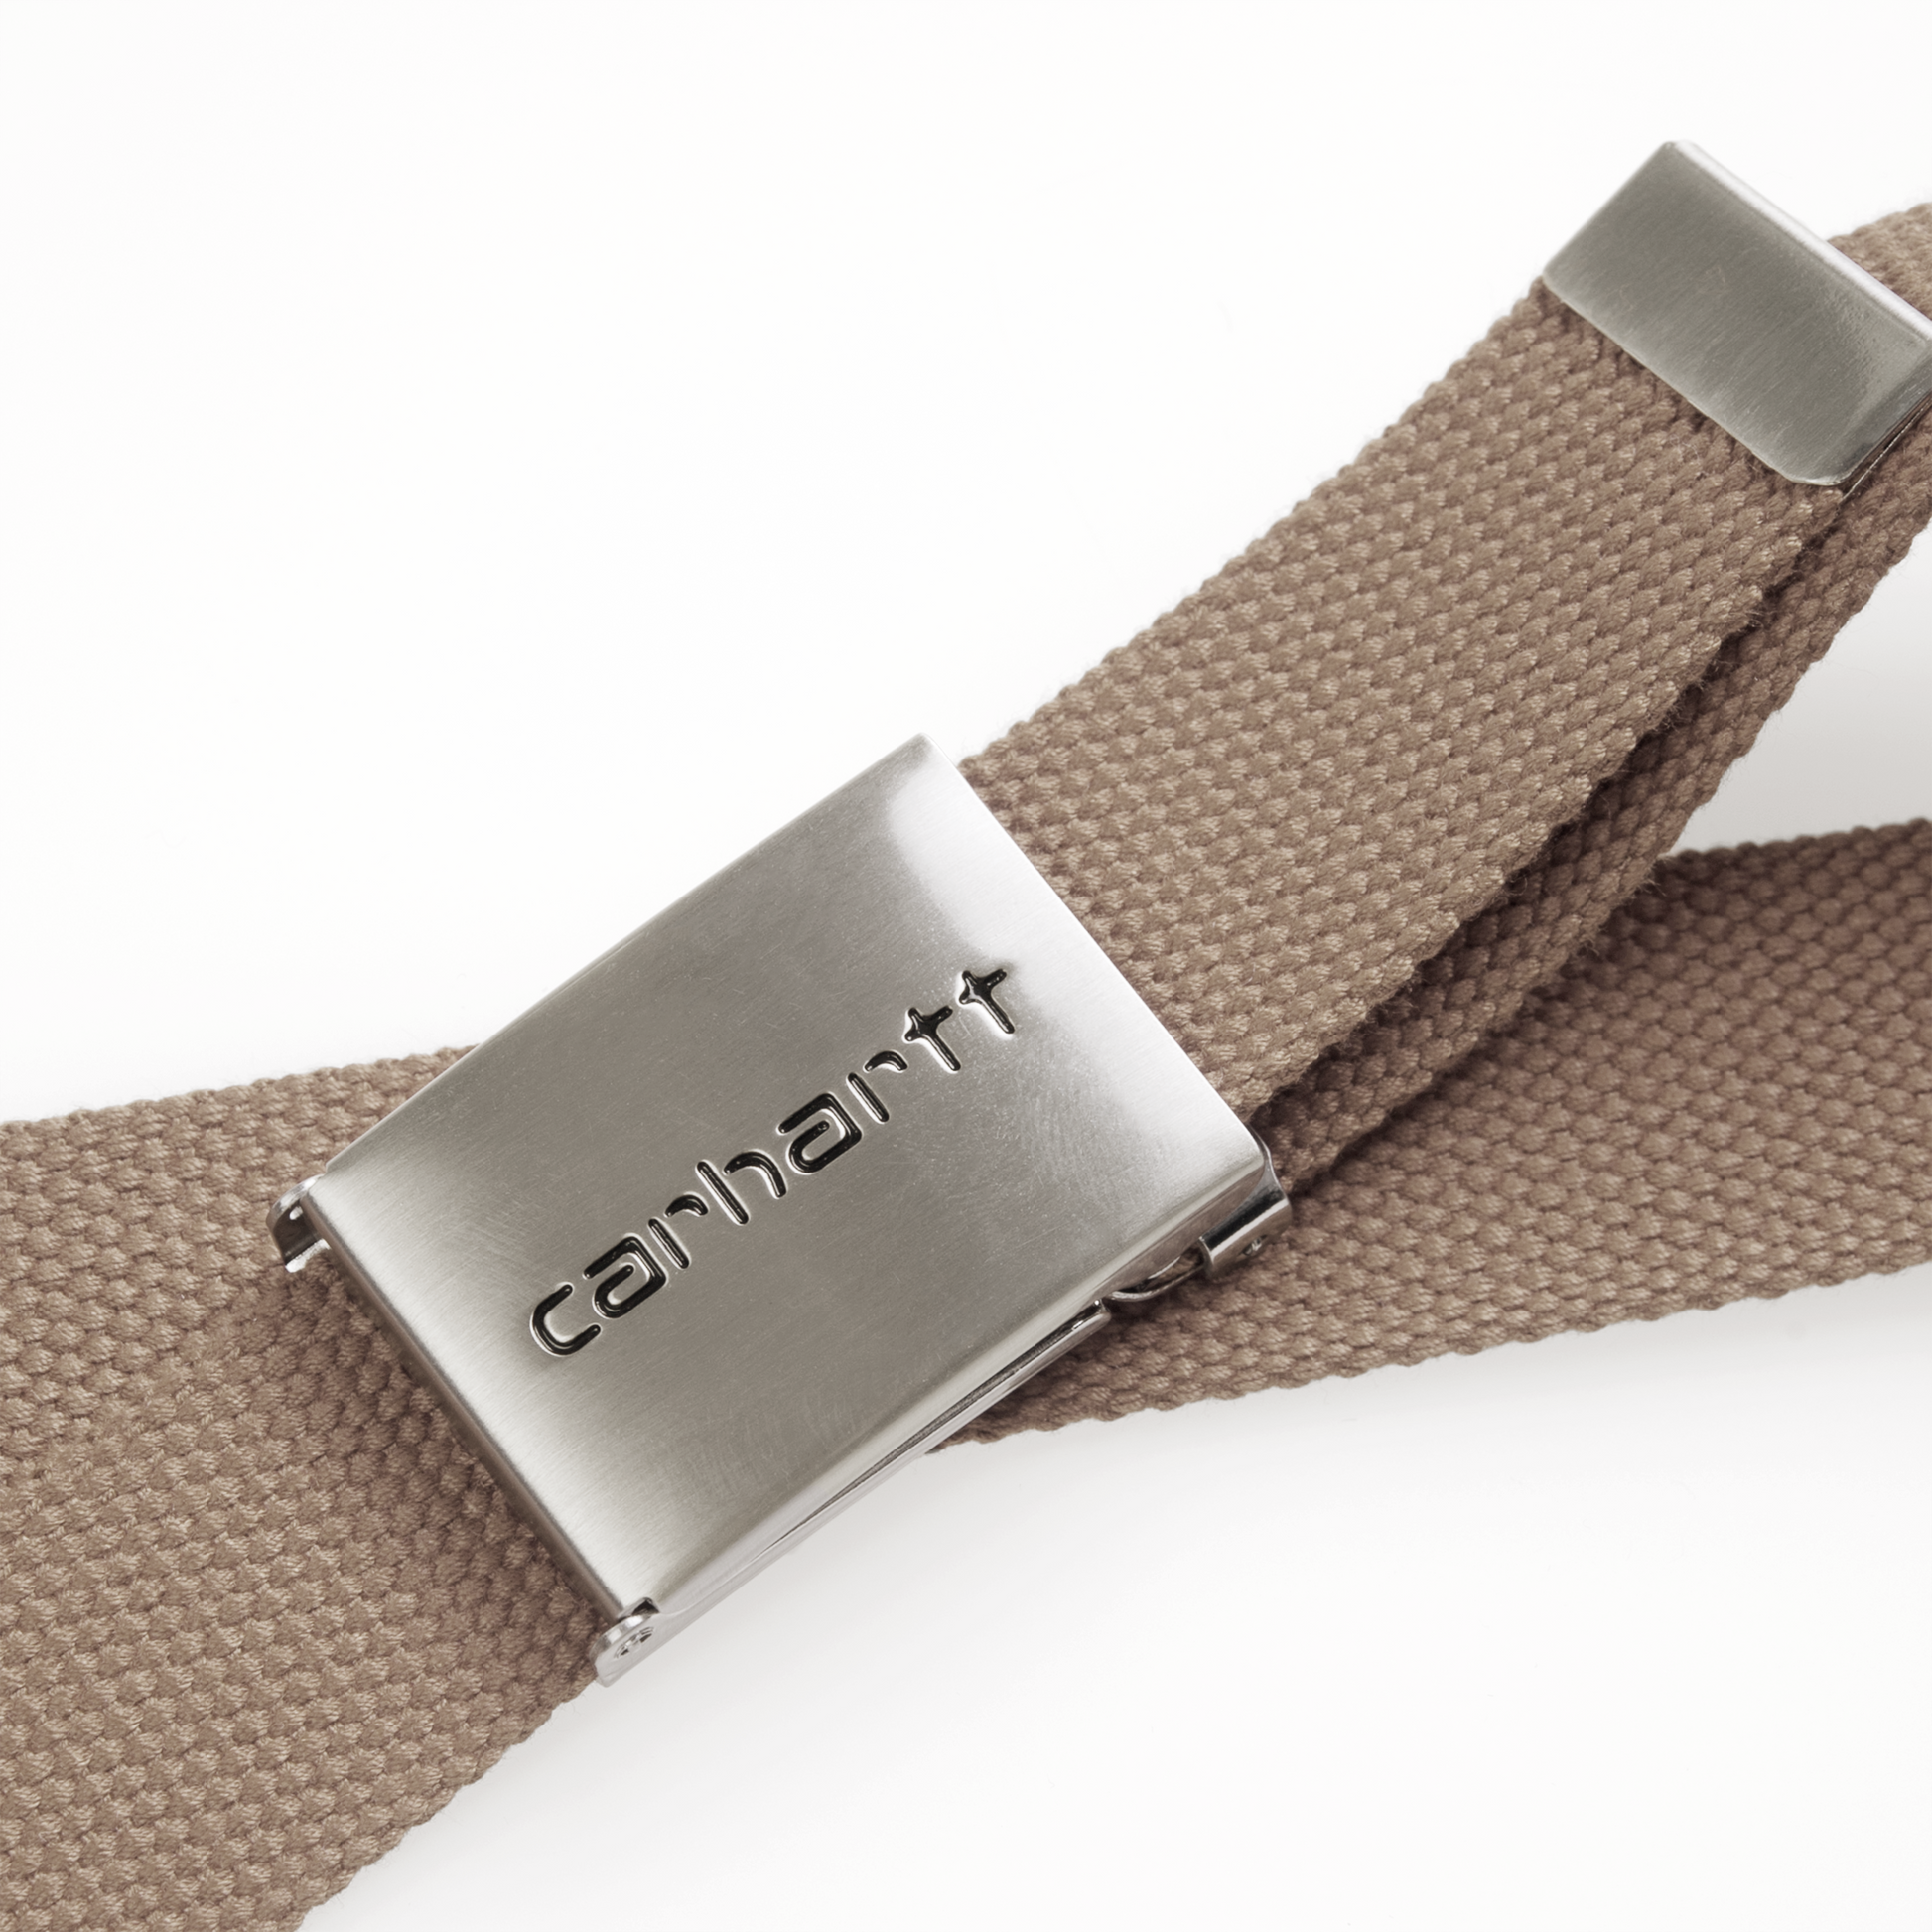 Carhartt WIP Clip Belt Chrome em cor Leather. Foto de detalhe da fivela.